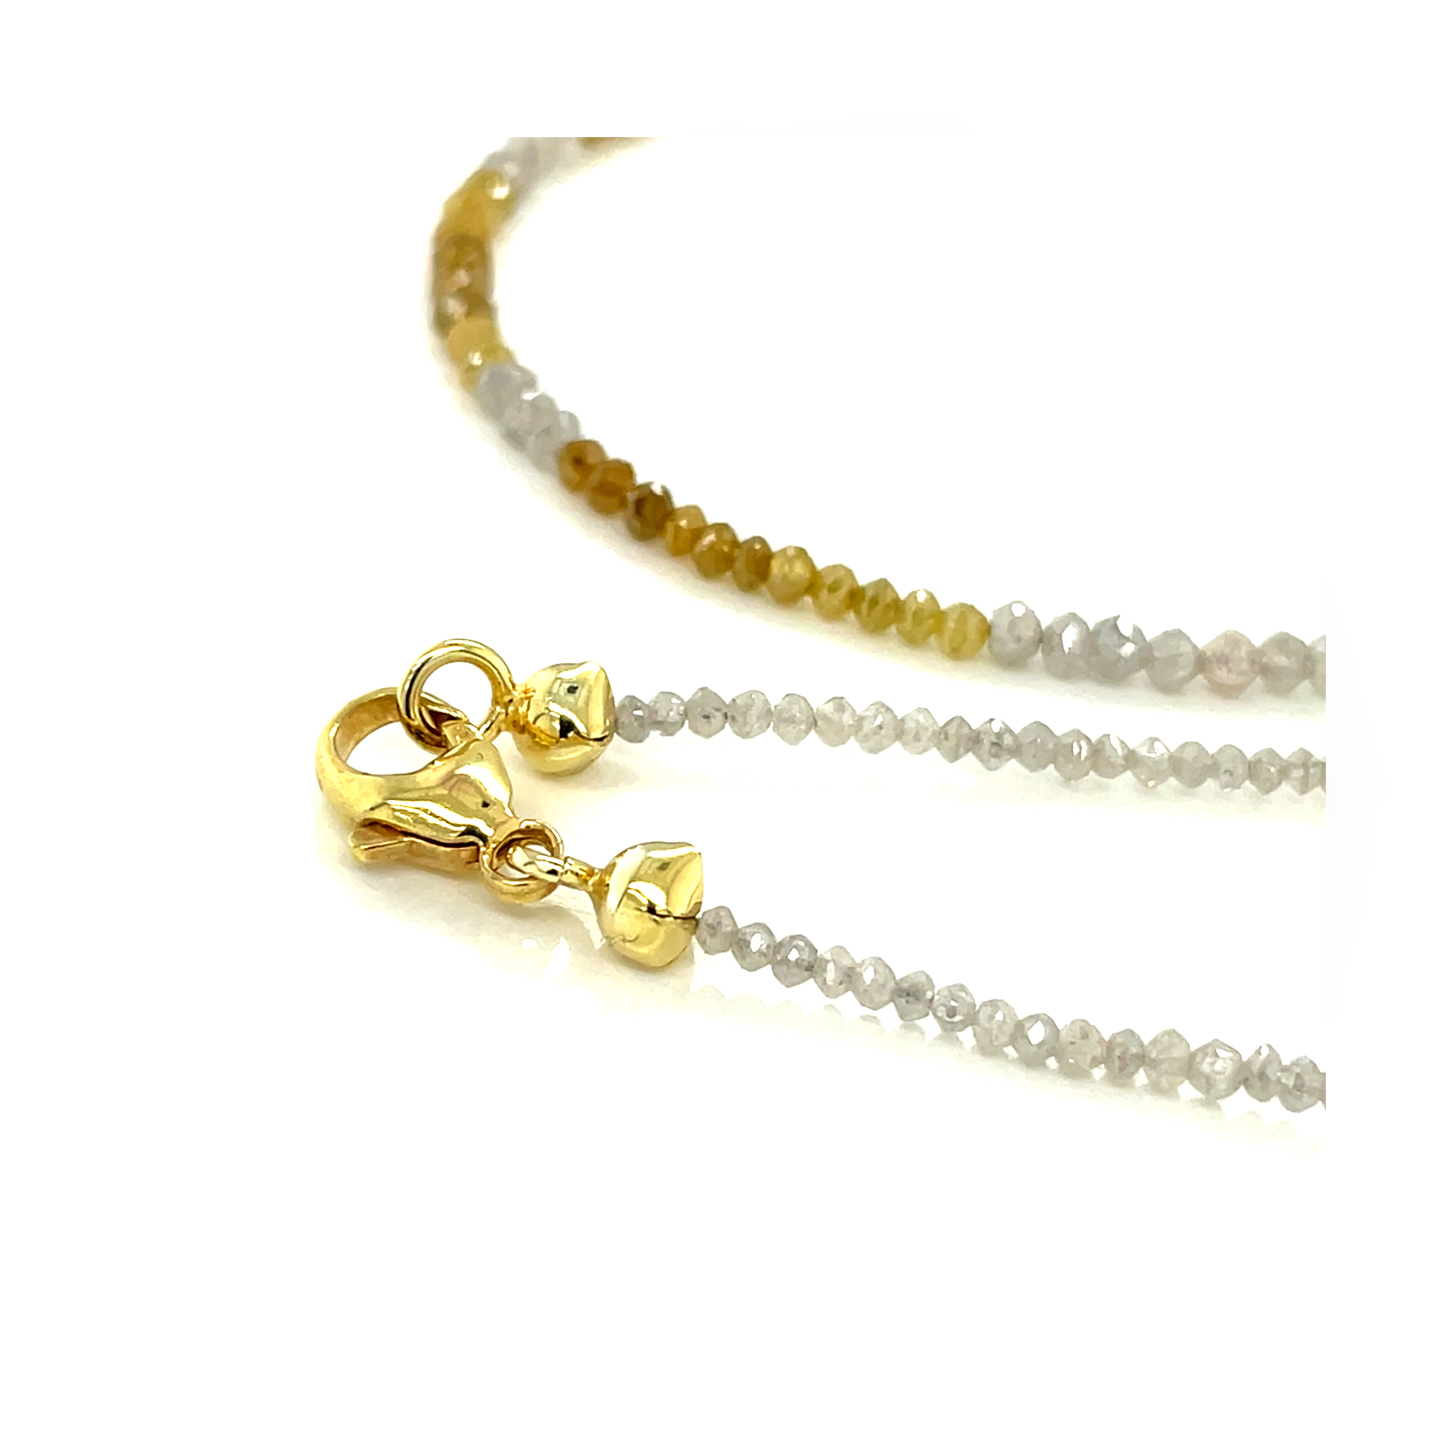 Diamant weiß/gelb Gelbgold 585/000, Edelstein Collier mit Karabinerverschluss,  ca. 15 ct. , Sogni d'oro 